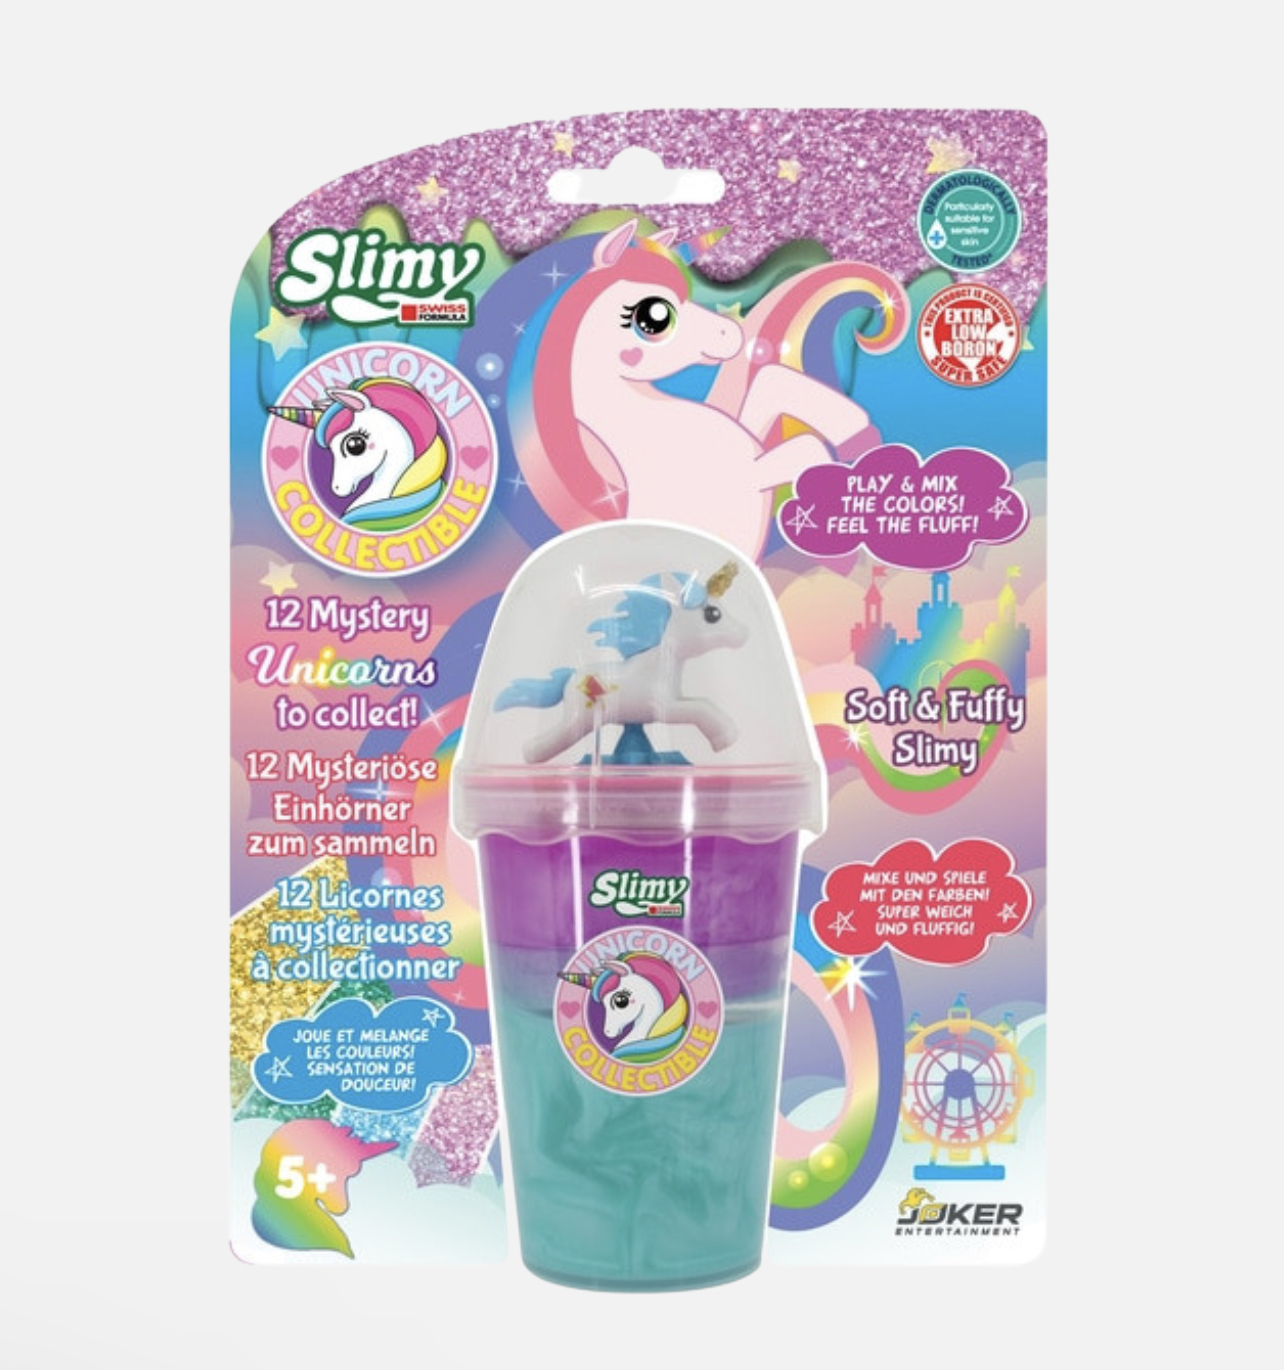 Slimmy Unicorn Collectible